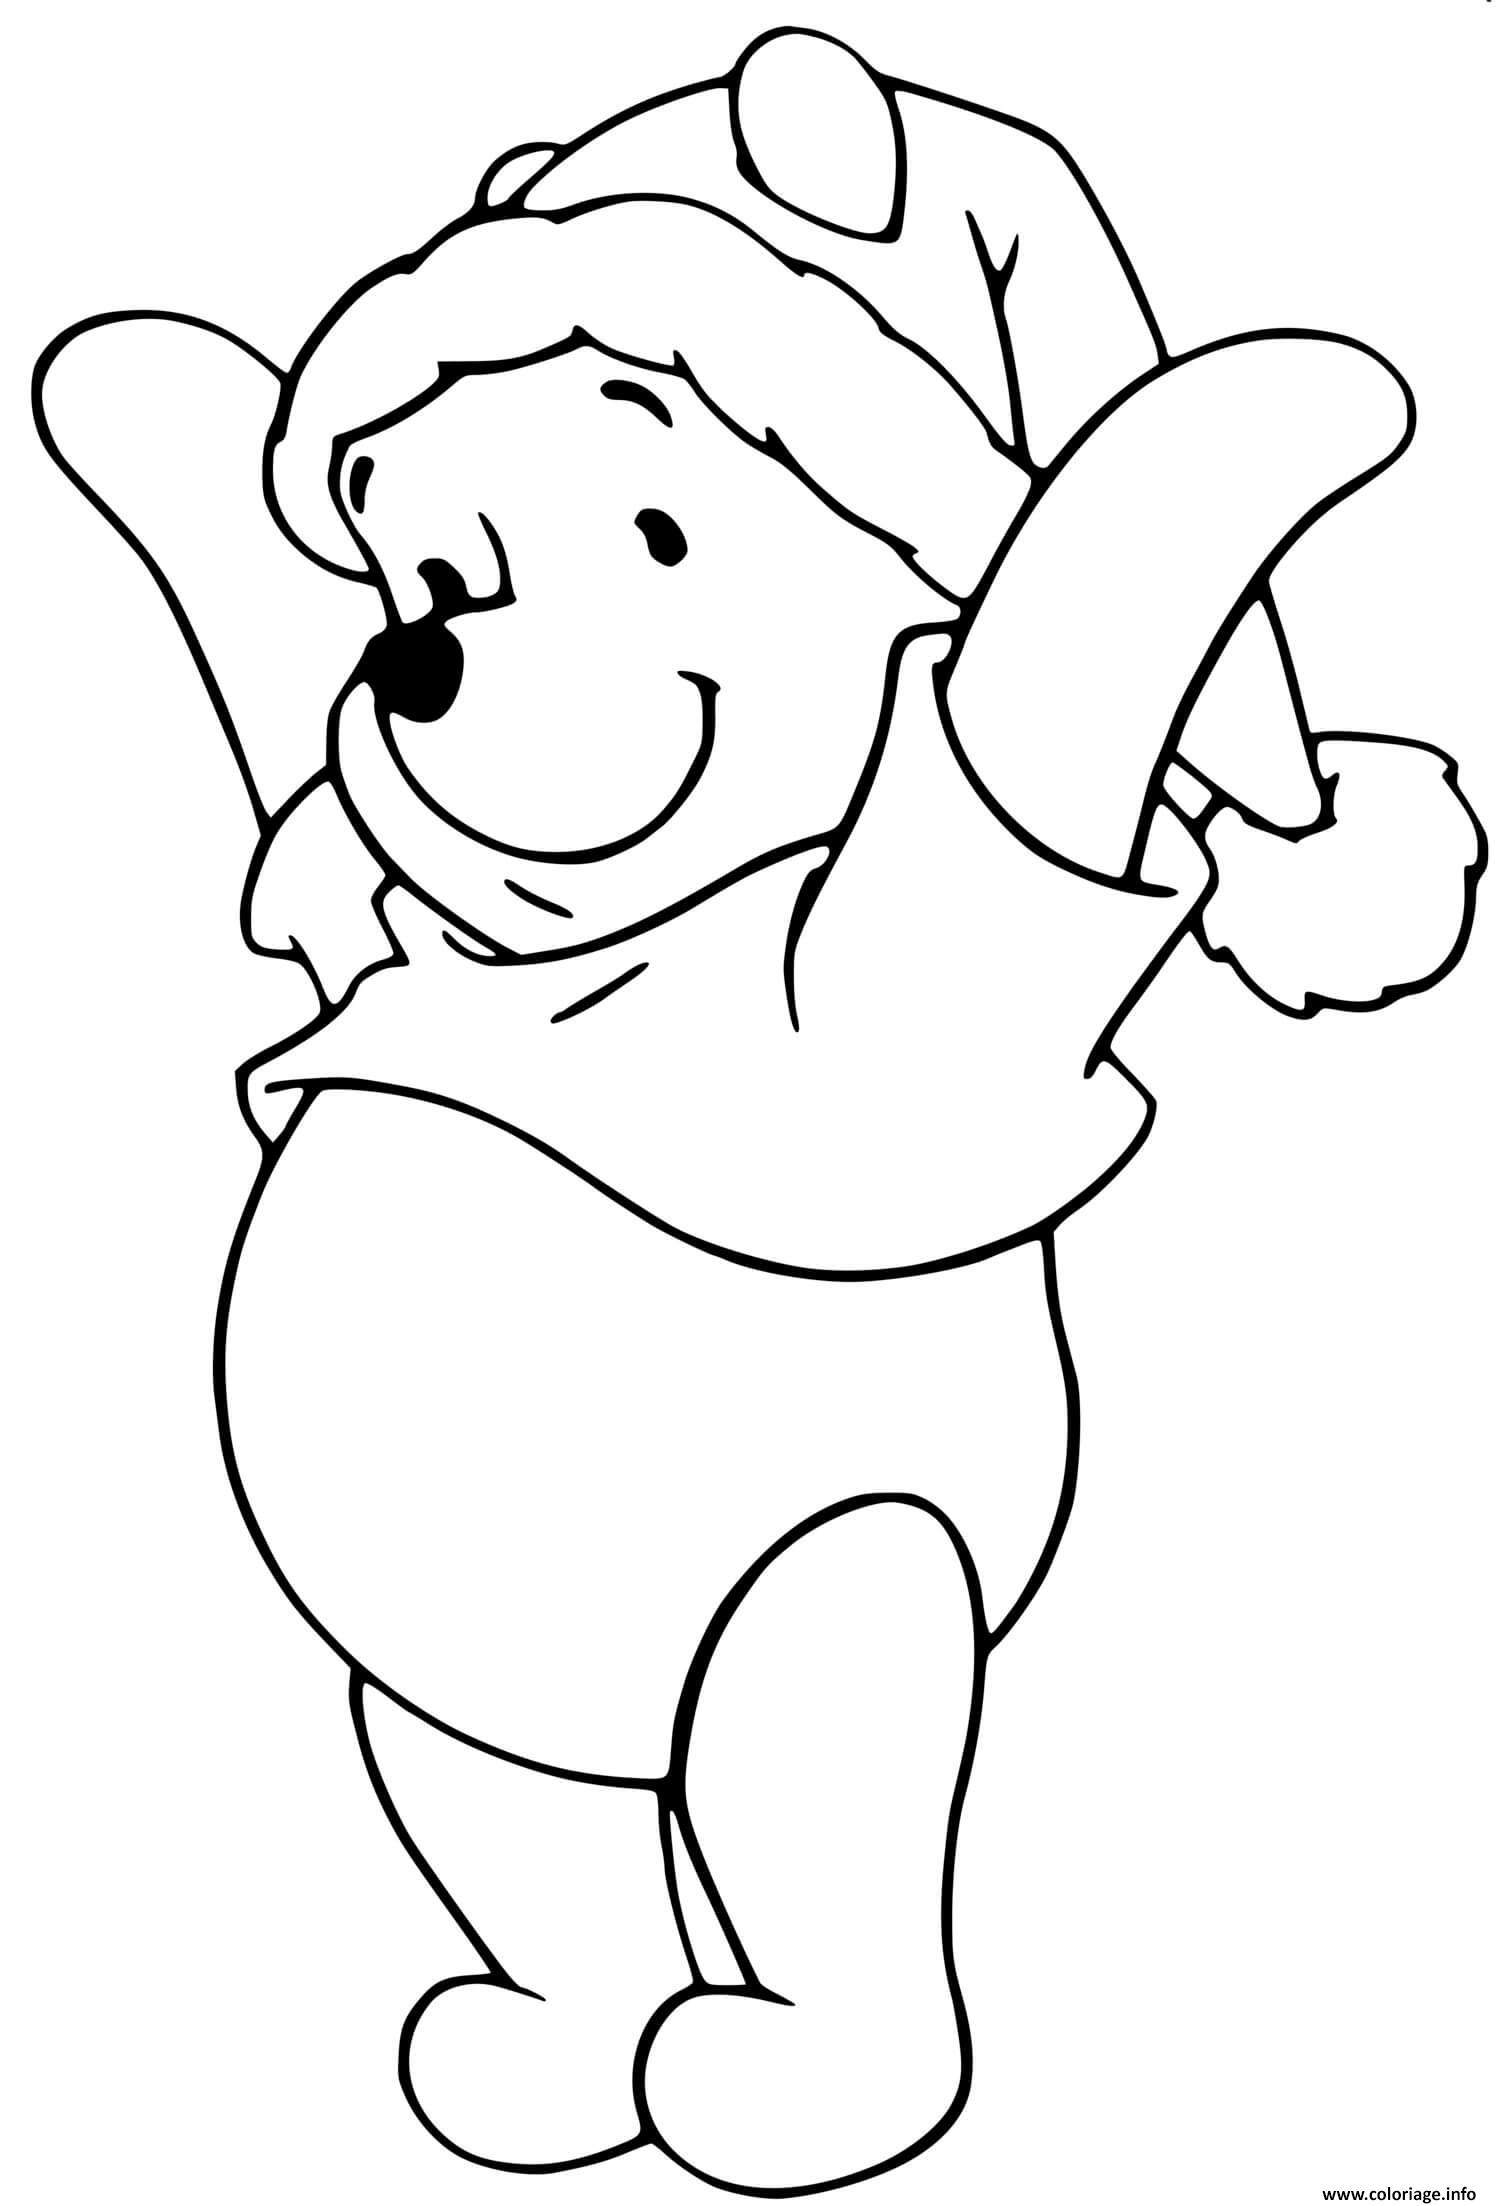 Dessin Winnie the Pooh as Santa Claus Coloriage Gratuit à Imprimer